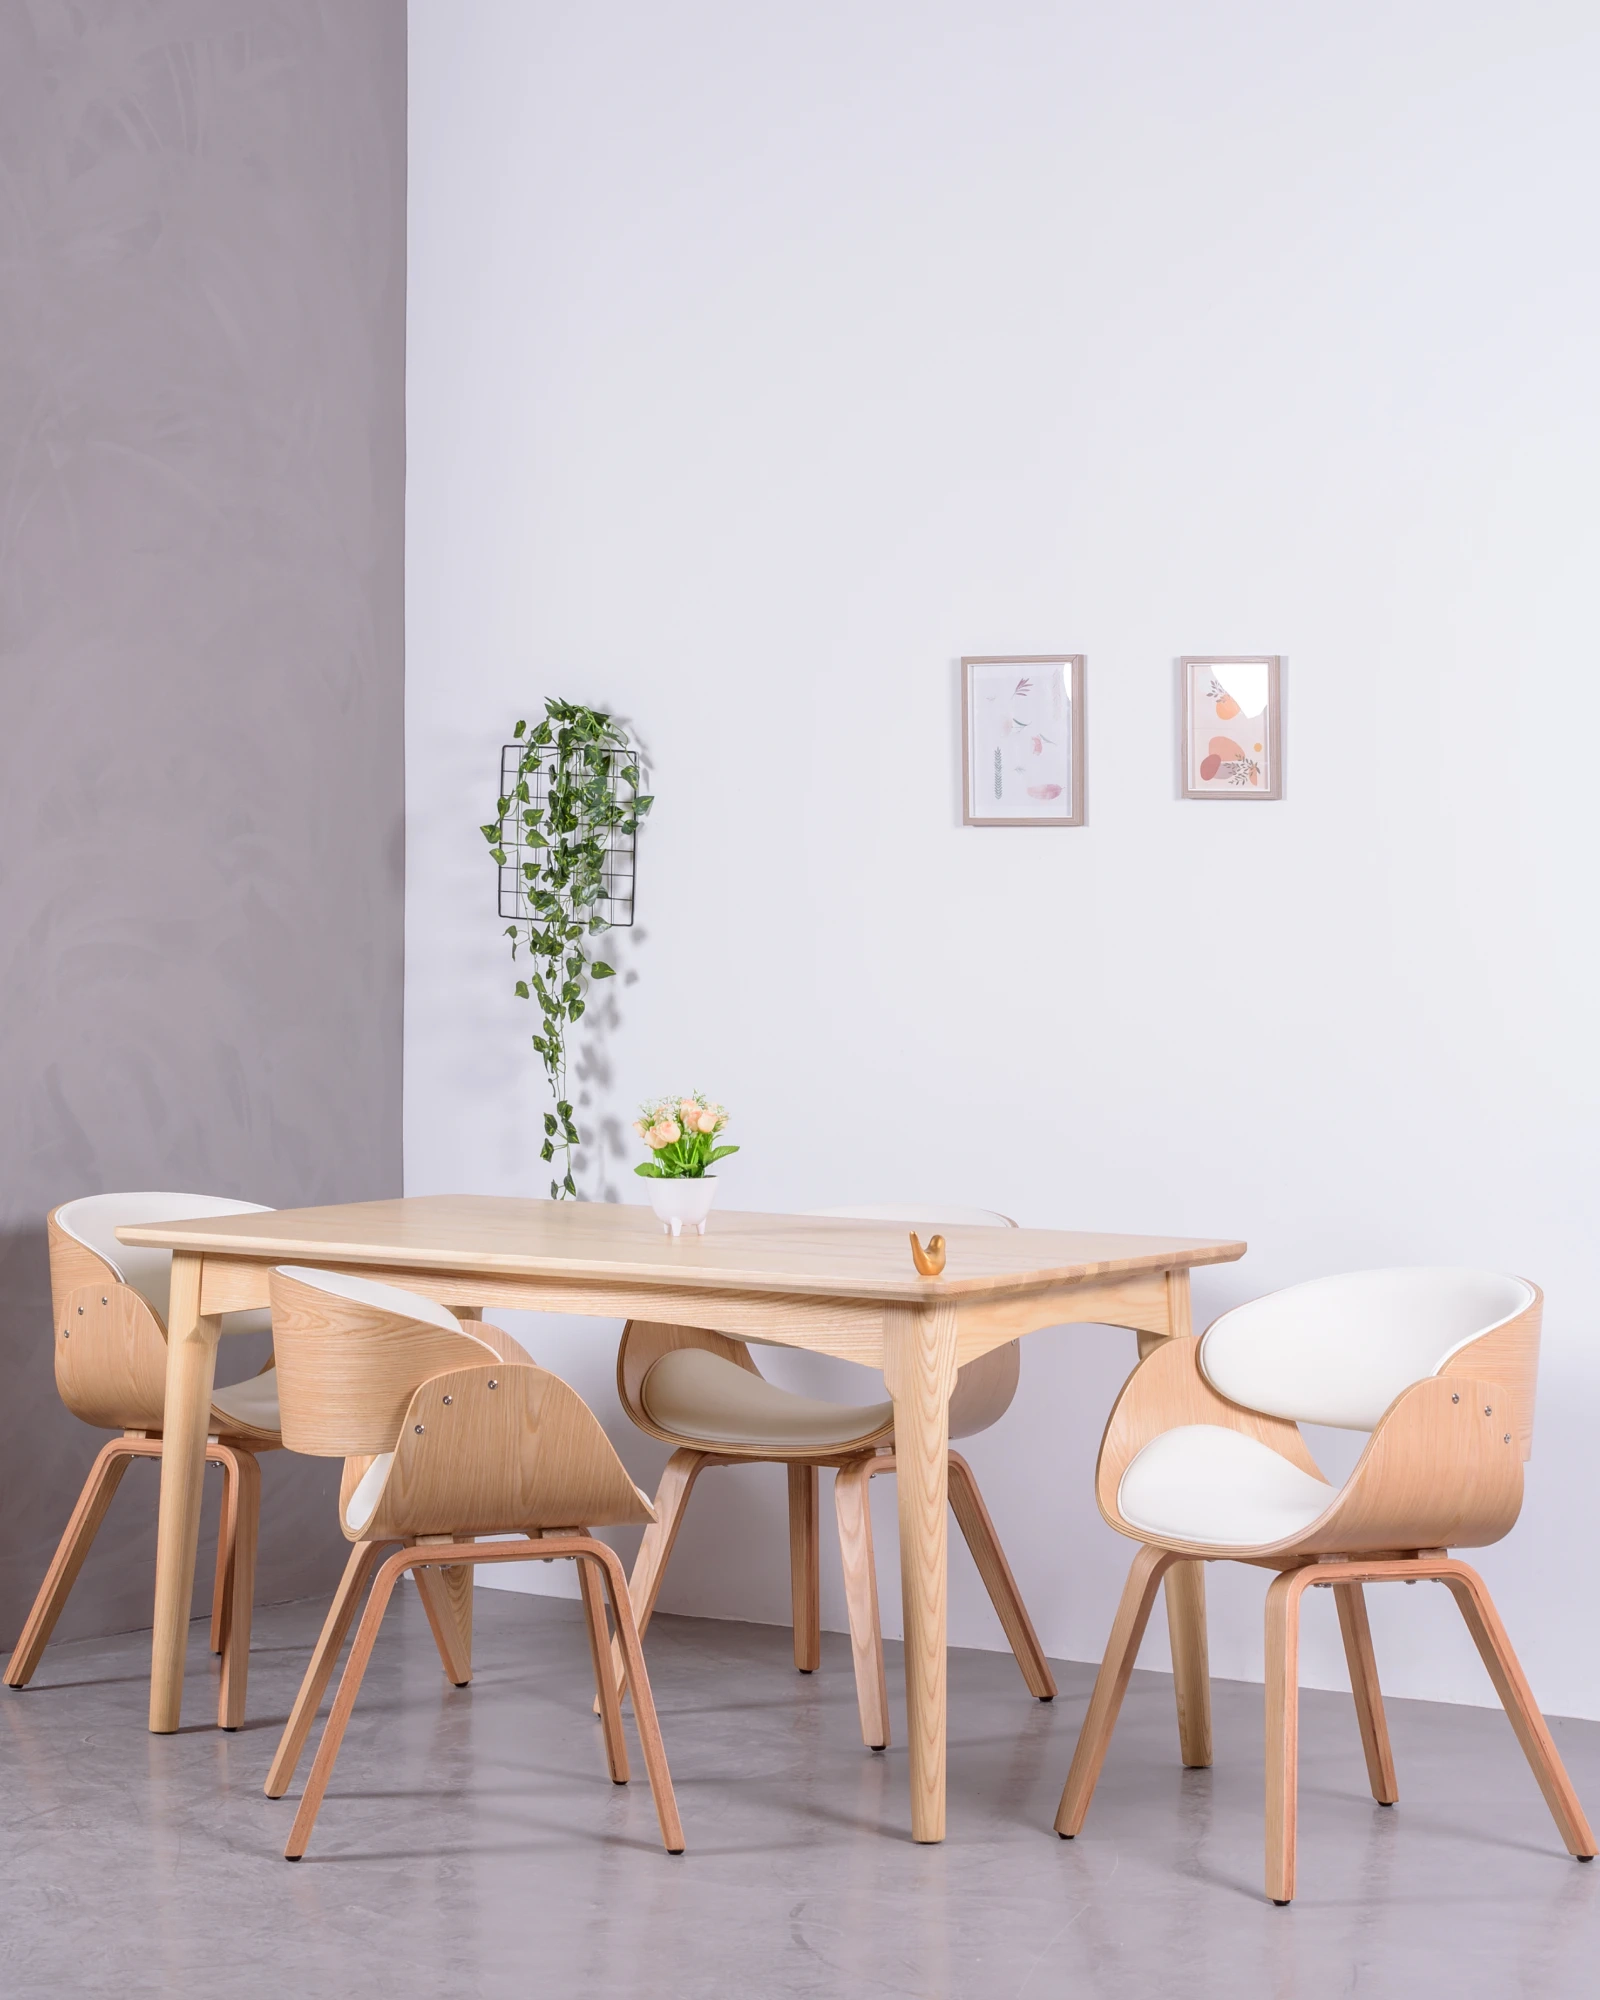 Chaise de salle à manger Design scandinave bois assise en corde - Wish